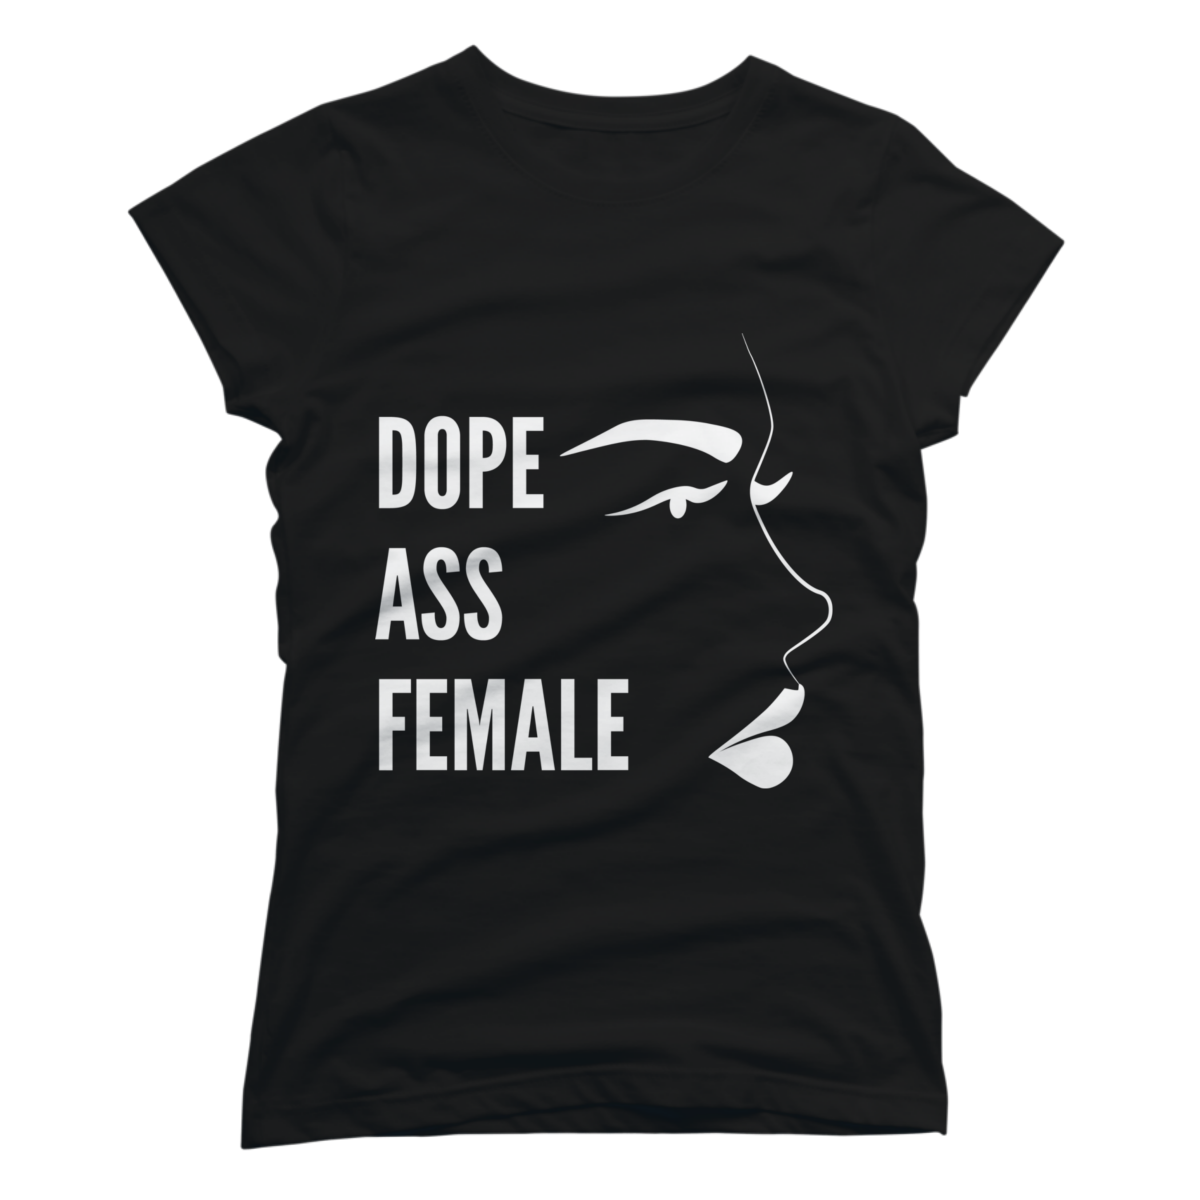 dope t shirt women